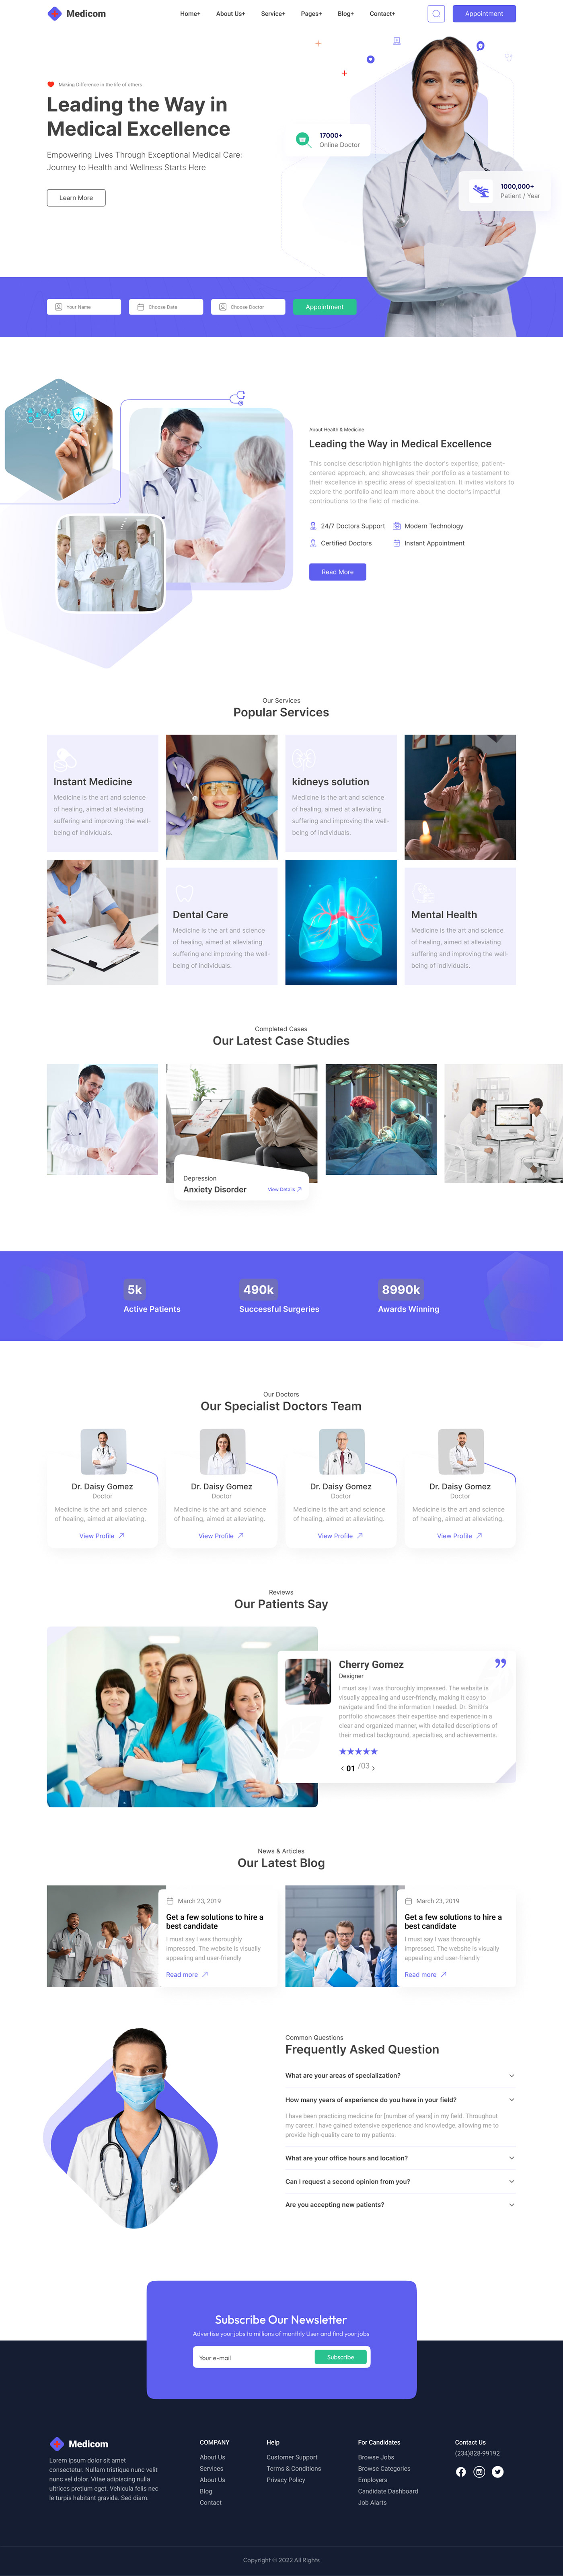 doctor doctors healthcare Healthcare design Website template design template design UI/UX ui design